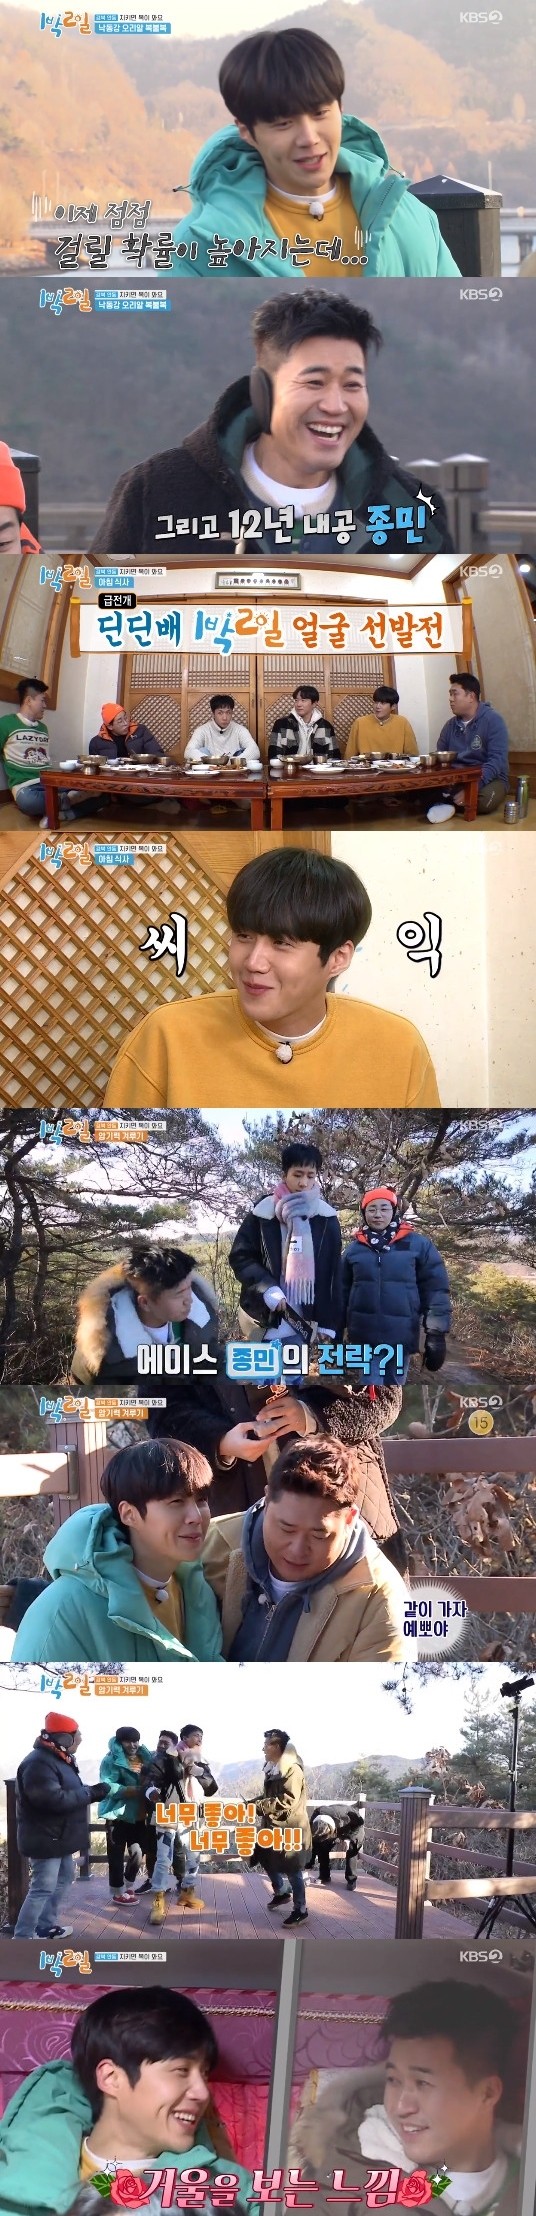 KBS 2TV '1박 2일 시즌4' 방송 장면.